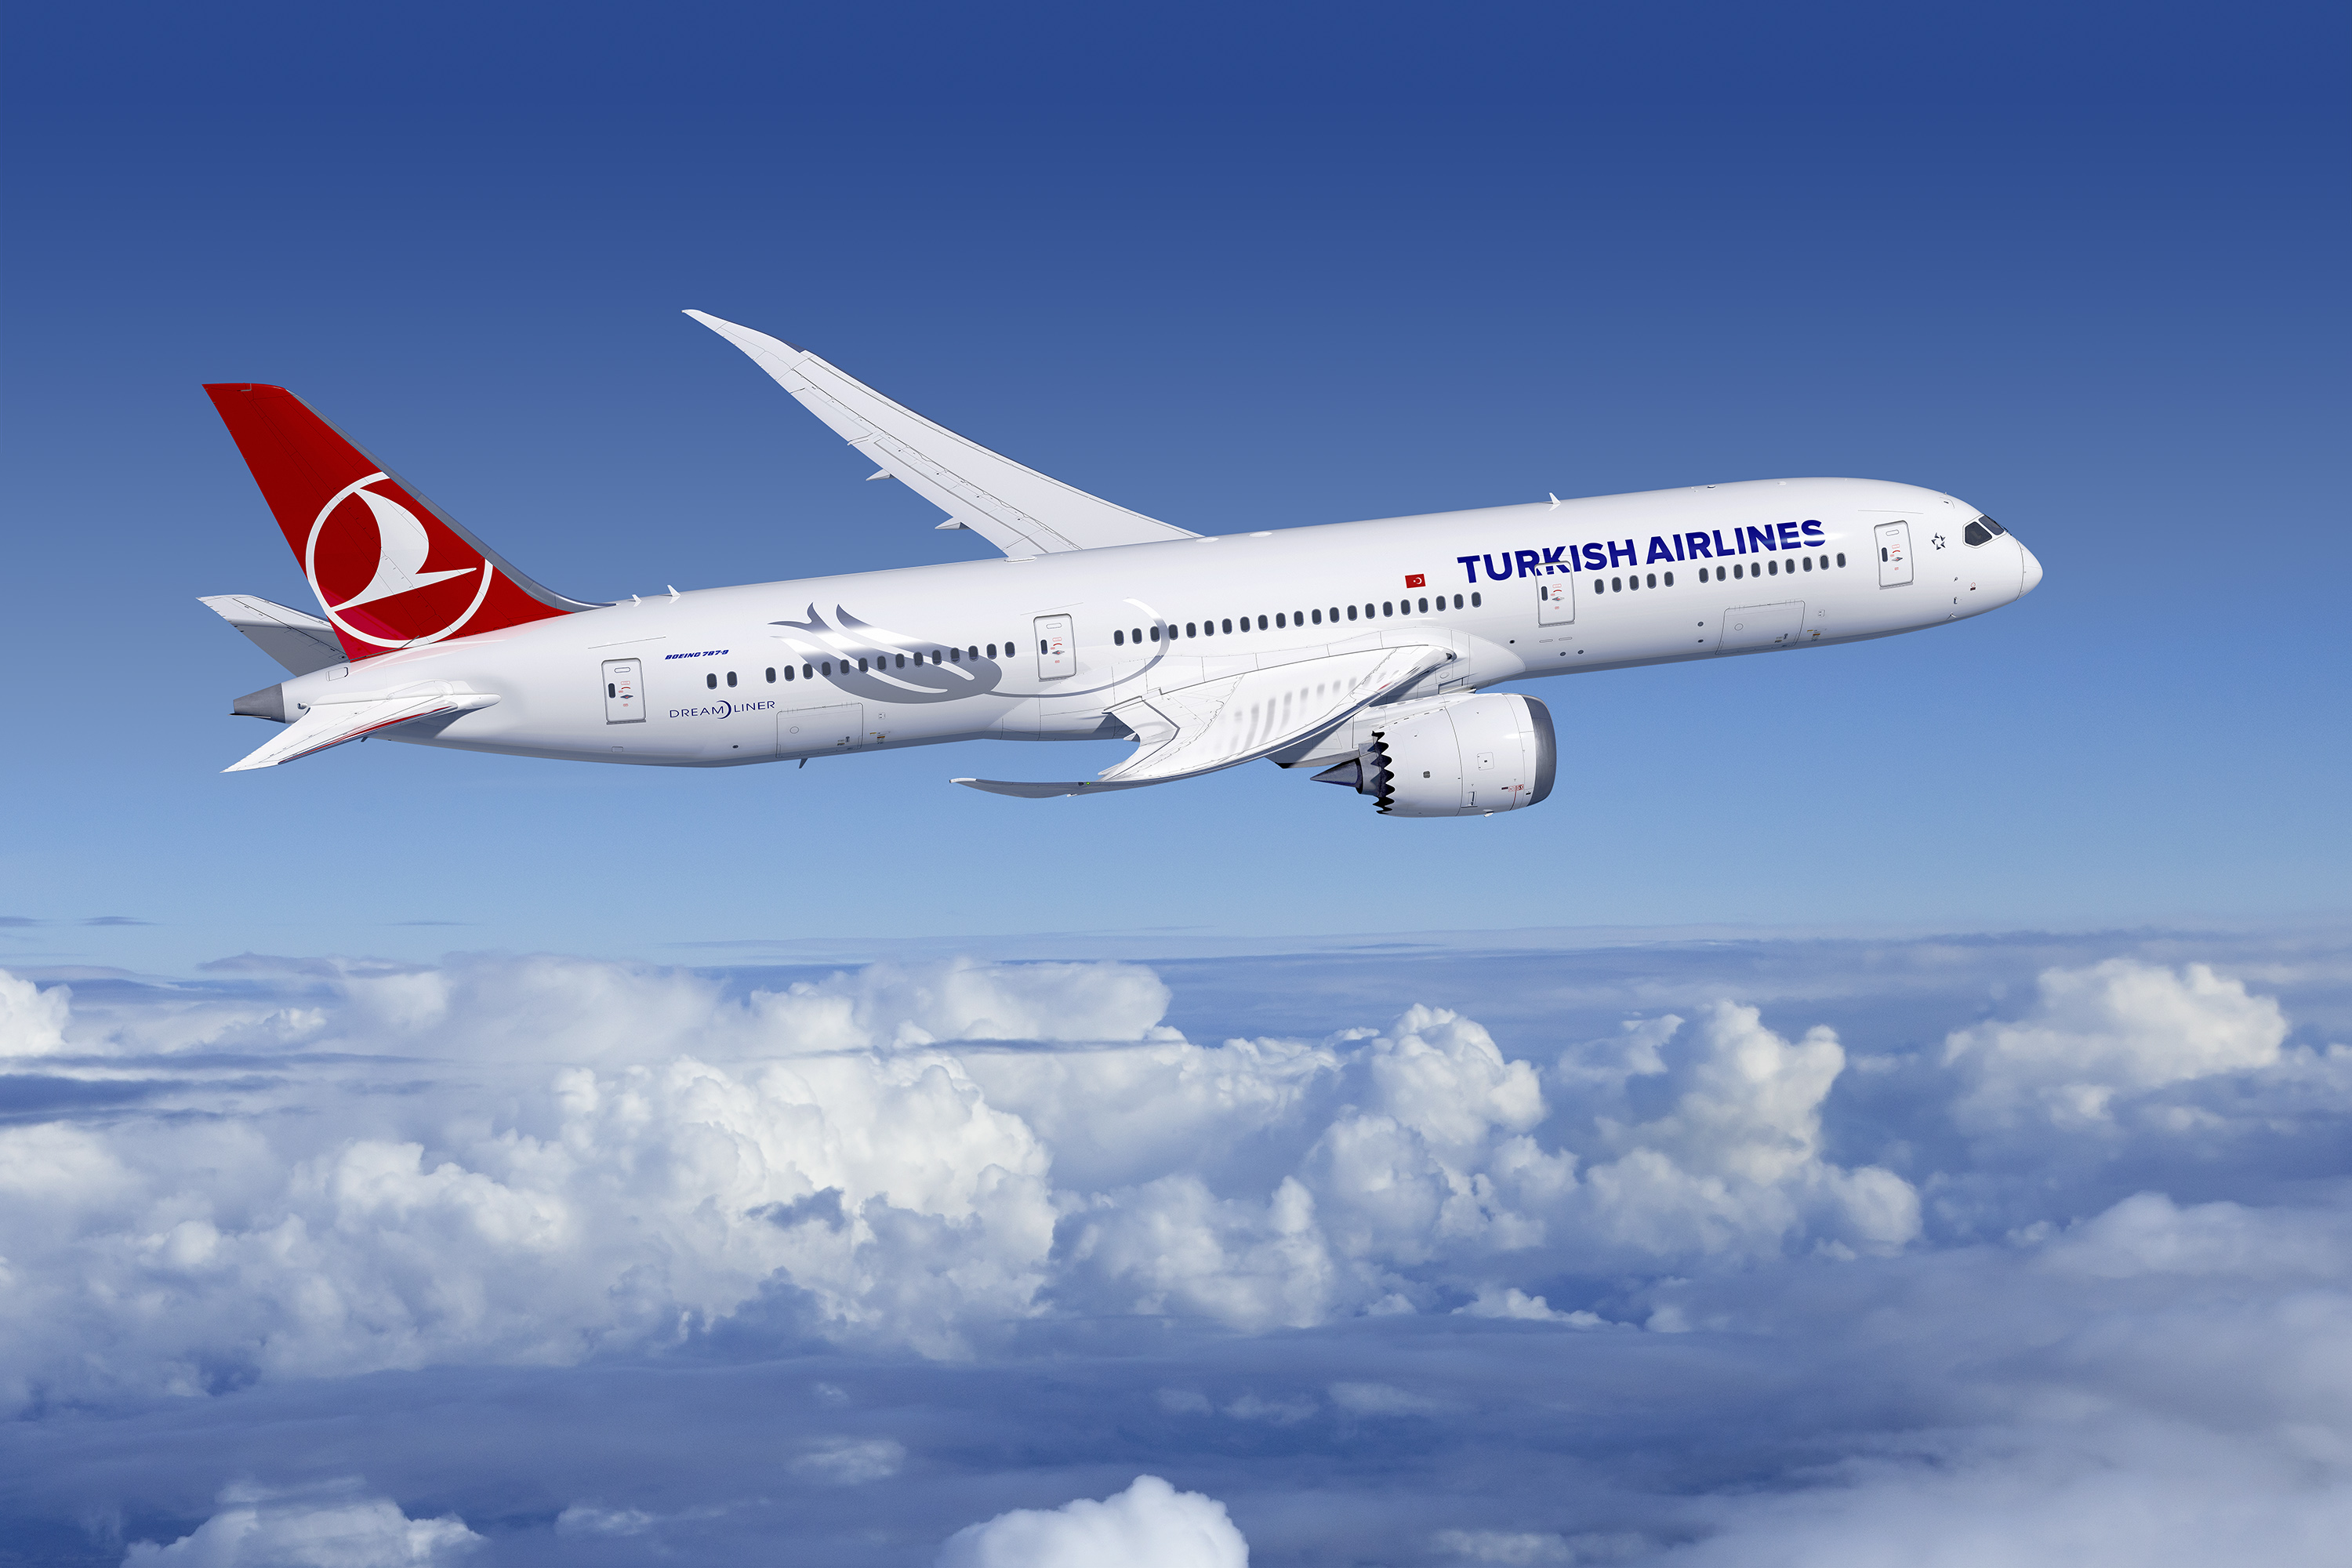 ターキッシュ エアラインズ 羽田 イスタンブール直行便年3月30日 月 から新規就航 Turkish Airlinesのプレスリリース